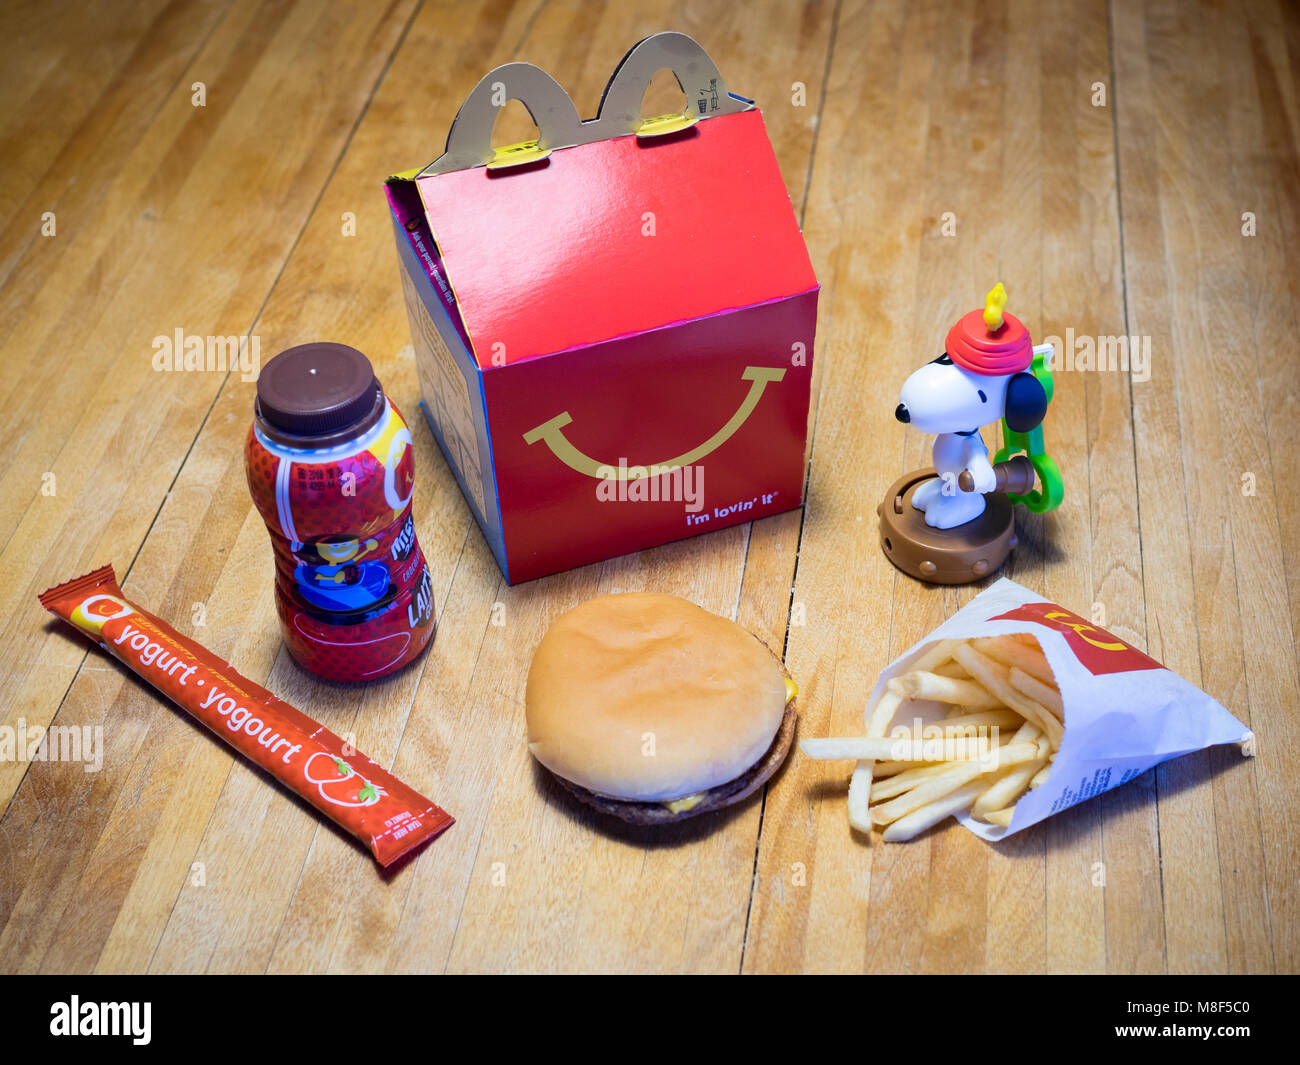 Ein McDonald's Happy Meal mit einem Cheeseburger, Pommes frites, Schokolade, Milch, Joghurt, und Snoopy Spielzeug. Stockfoto